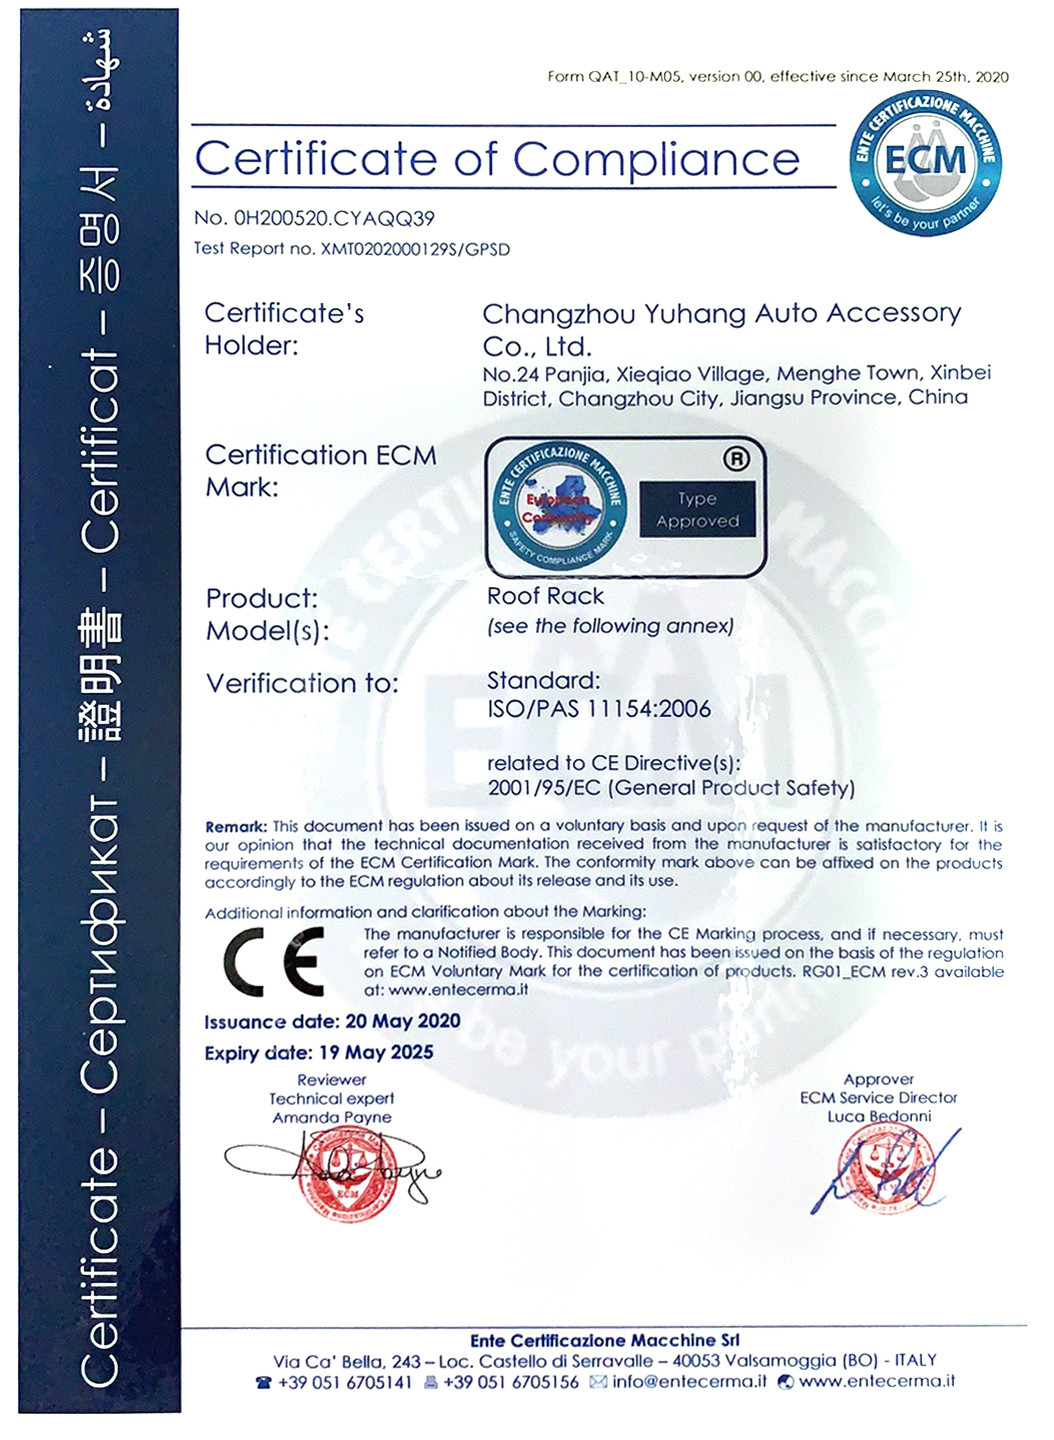 ประเทศจีน Changzhou Yuhang Auto Accessary Co., Ltd. รับรอง